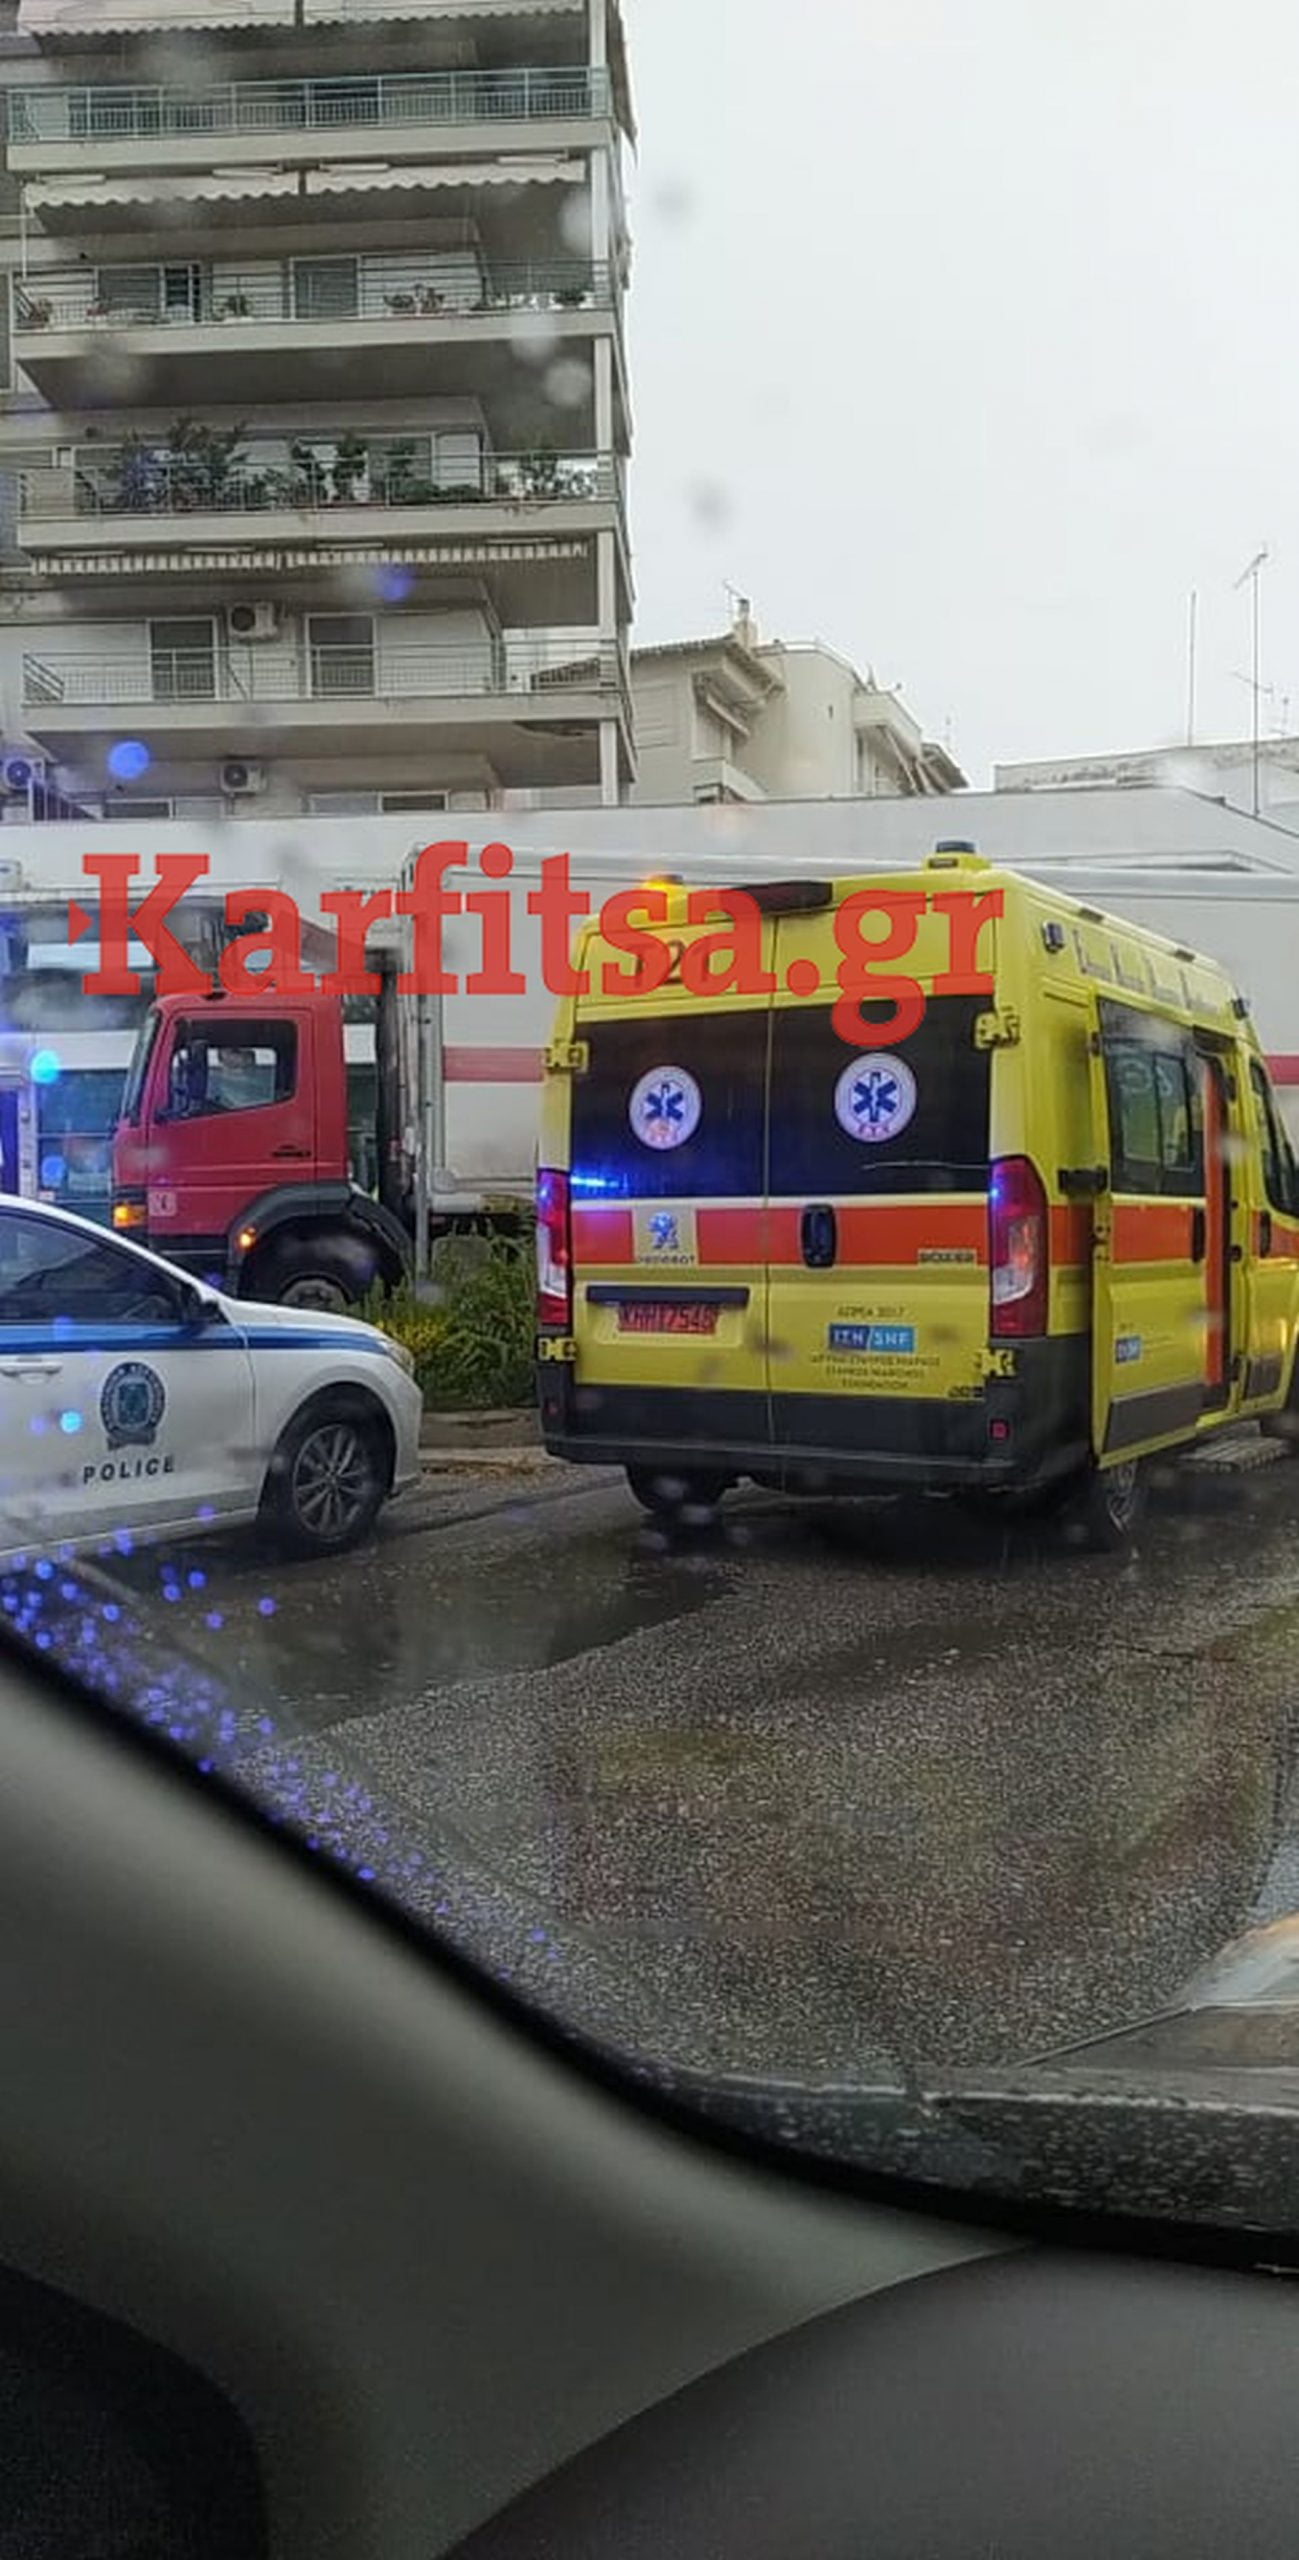 Θεσσαλονίκη: Φορτηγό παρέσυρε ποδηλάτισσα- Είναι σε σοβαρή κατάσταση